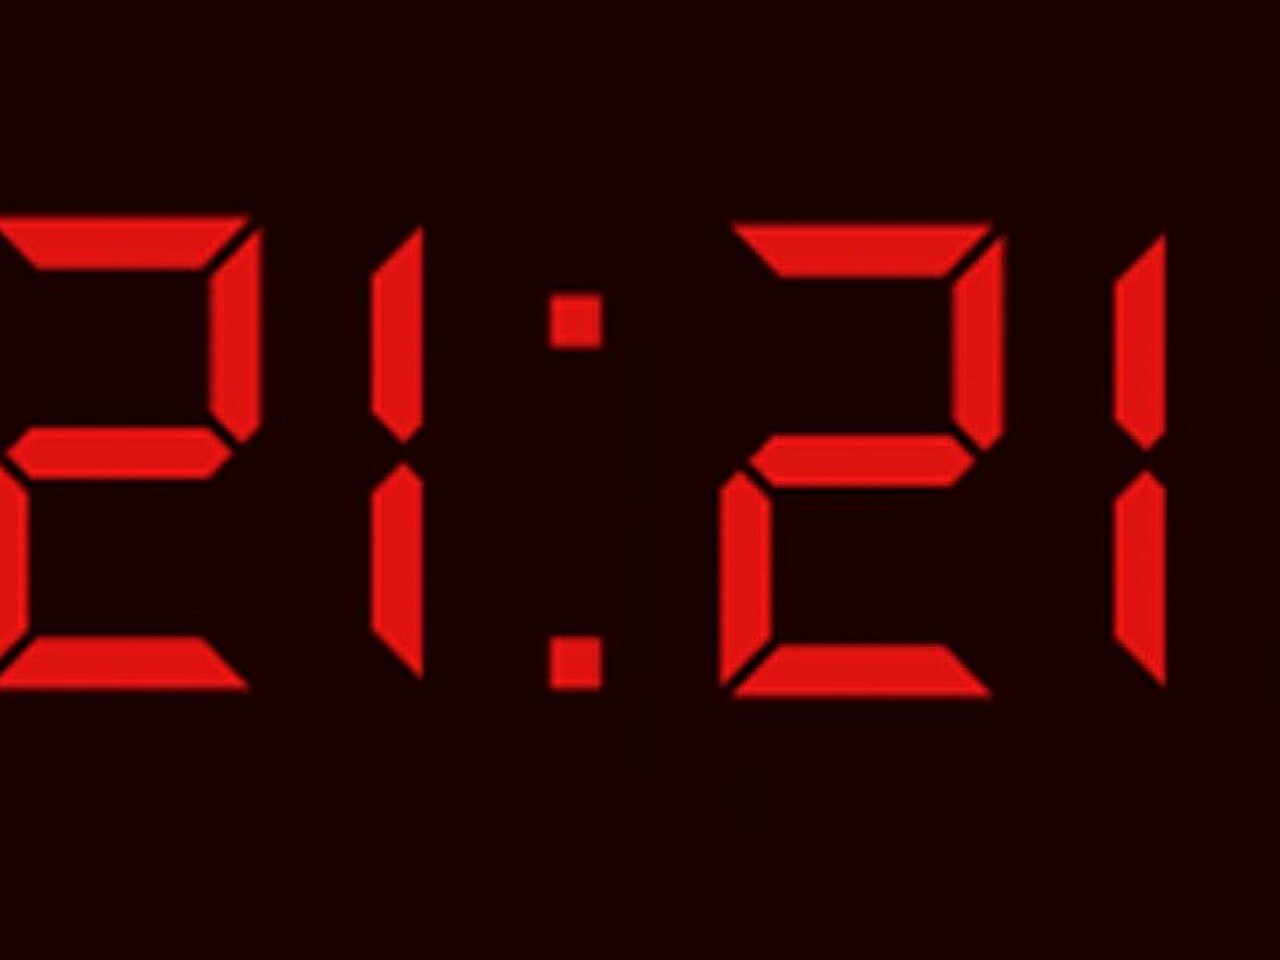 Цифры на электронных часах. 11 11 Электронные часы. Первые цифровые часы. Часы повторяющиеся цифры на часах.